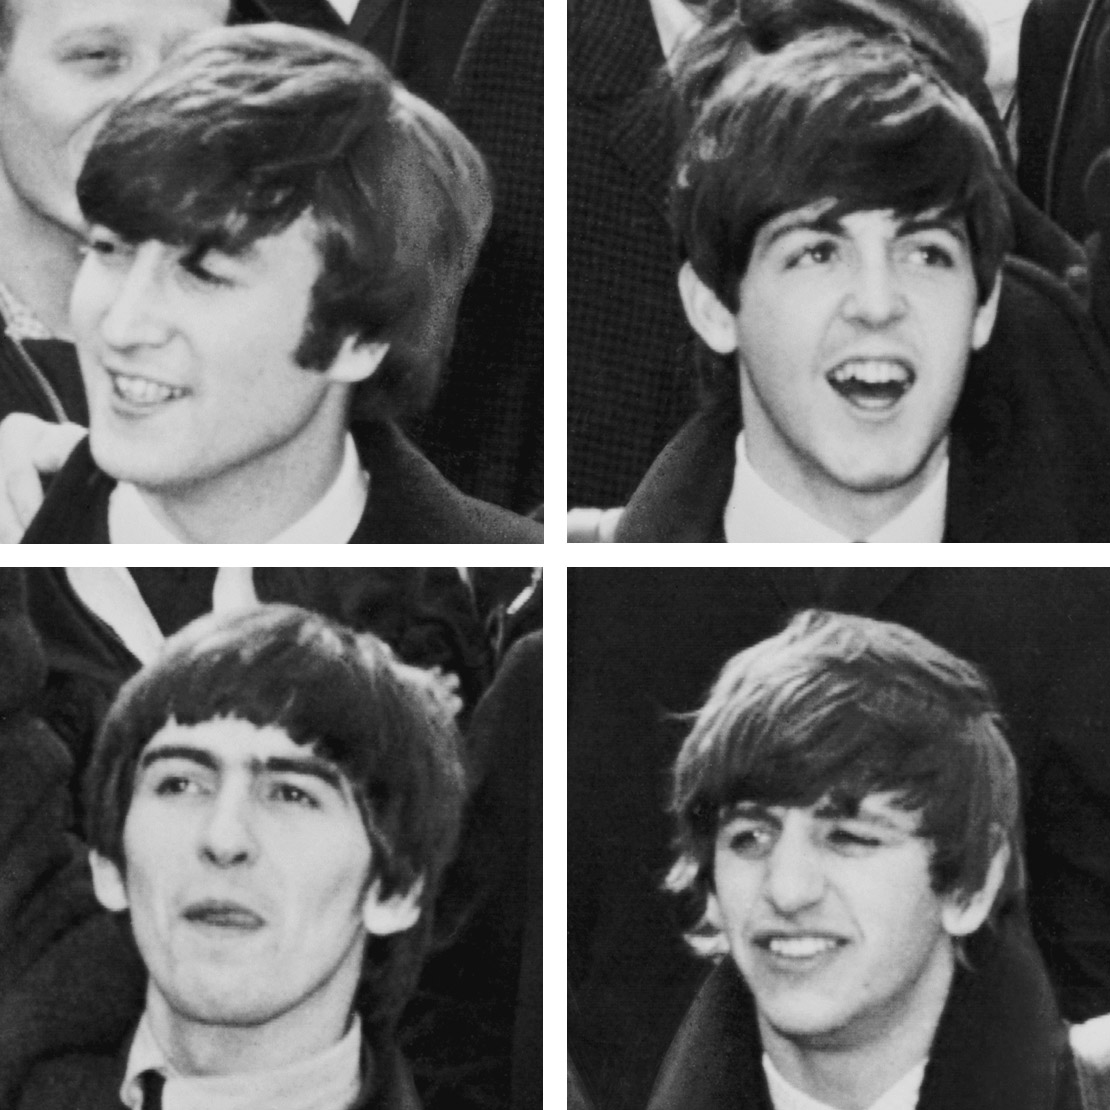 The_Beatles_members_at_New_York_City_in_1964